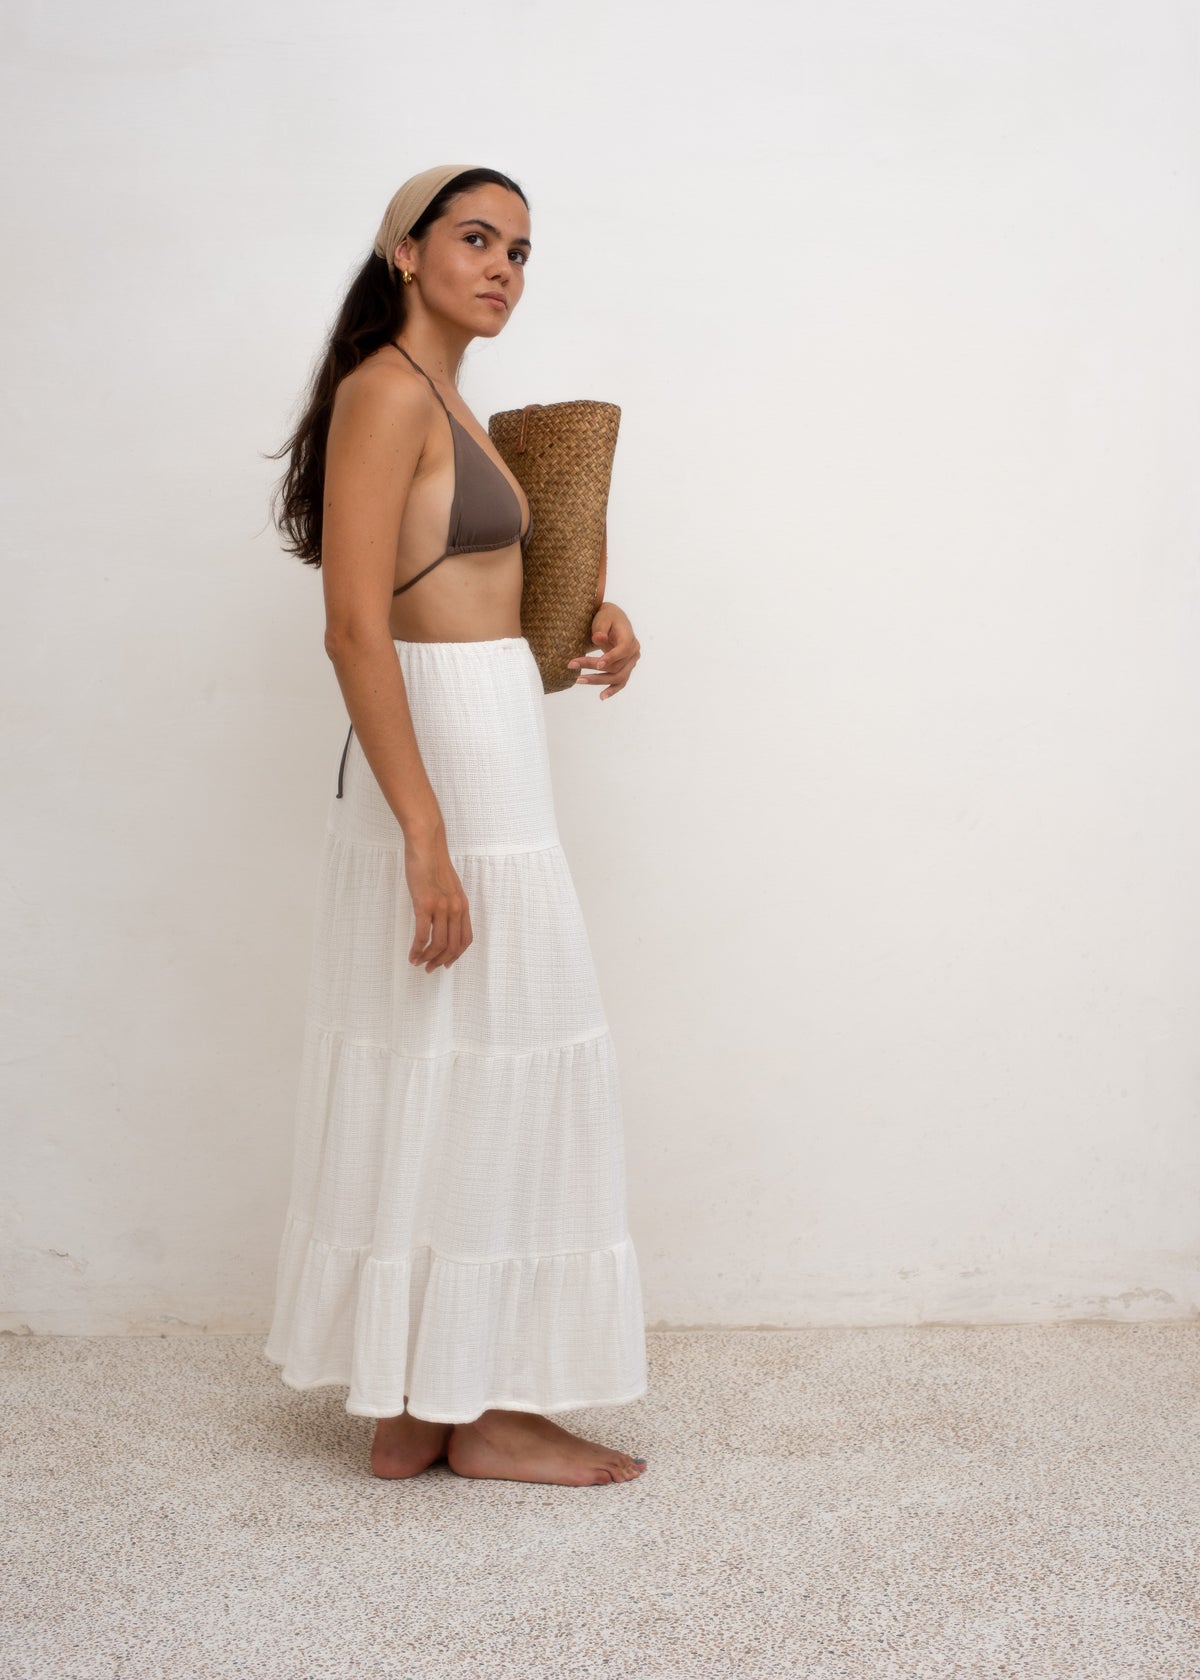 The Cotton Skirt — White Cotton